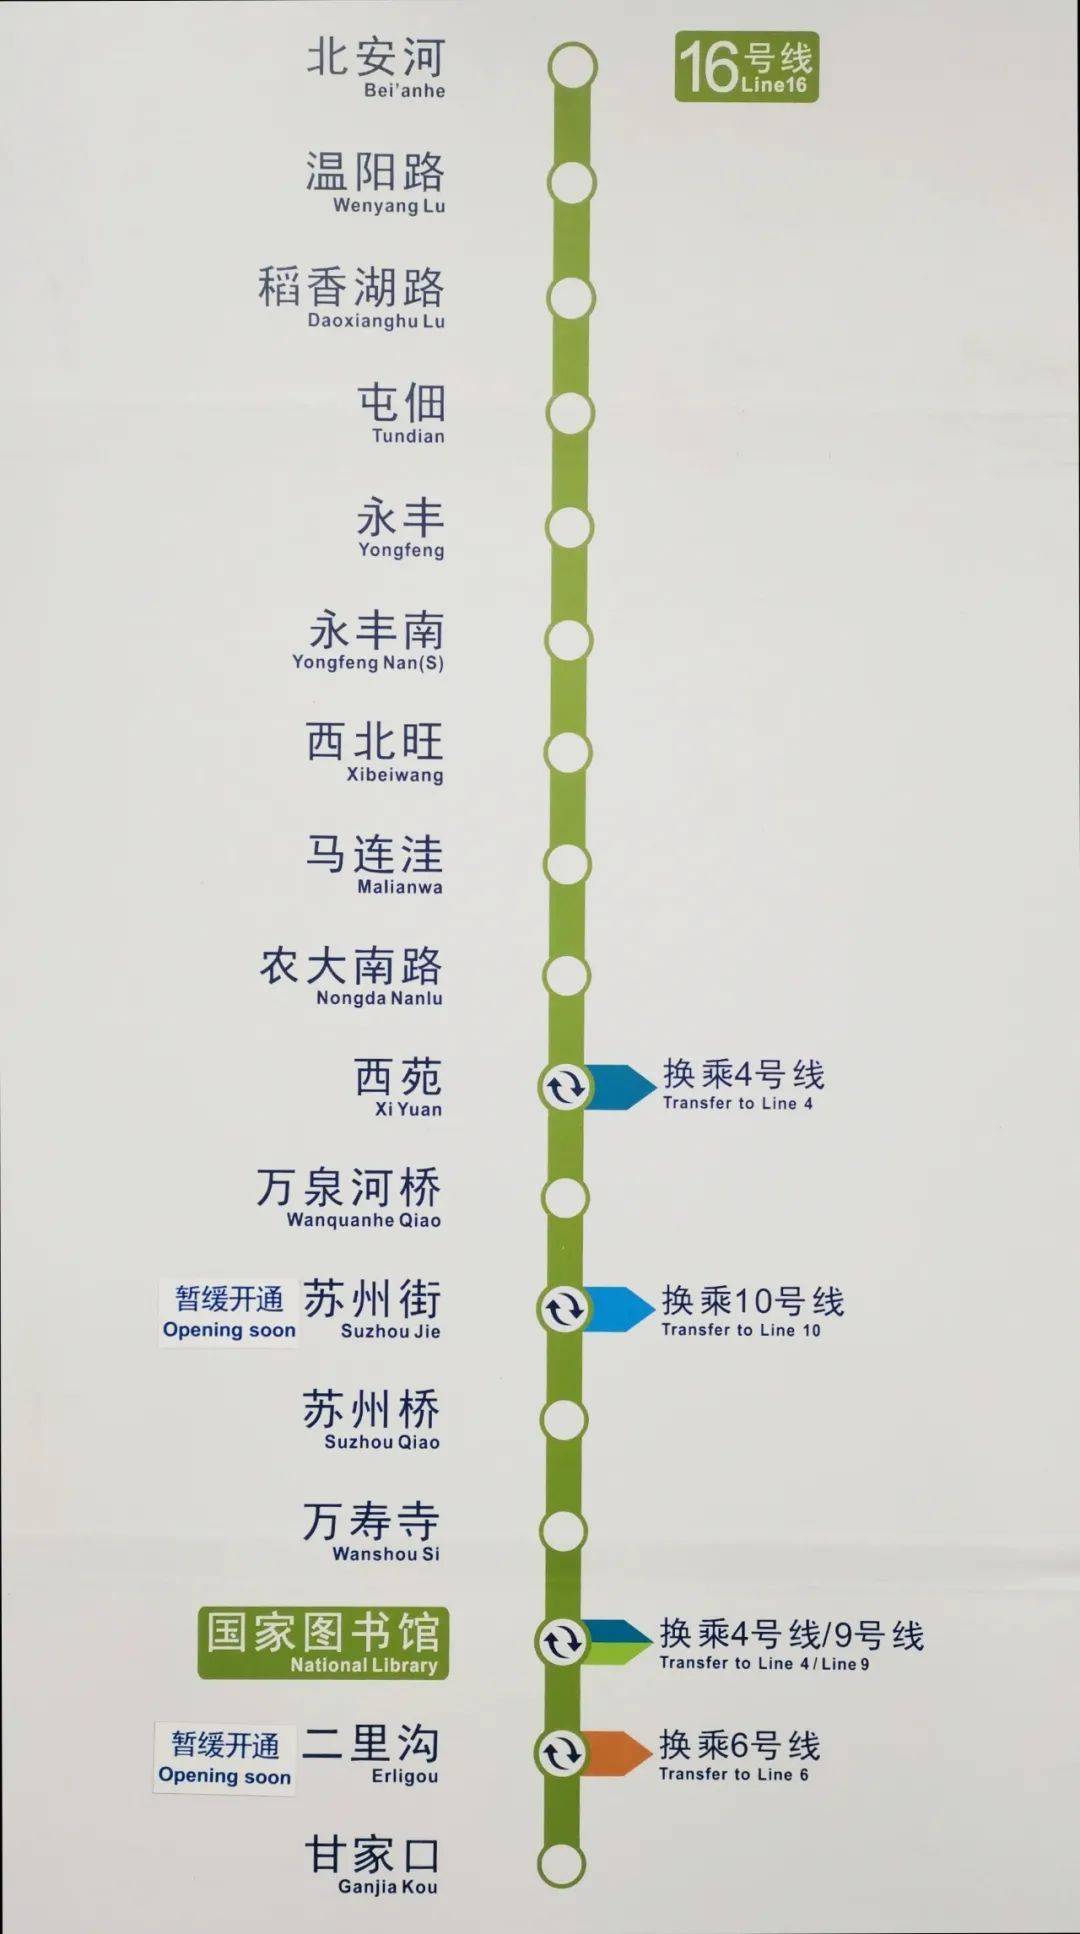 16号线中段,北段贯通运营后,中关村科学城北区,北京自贸区科技创新